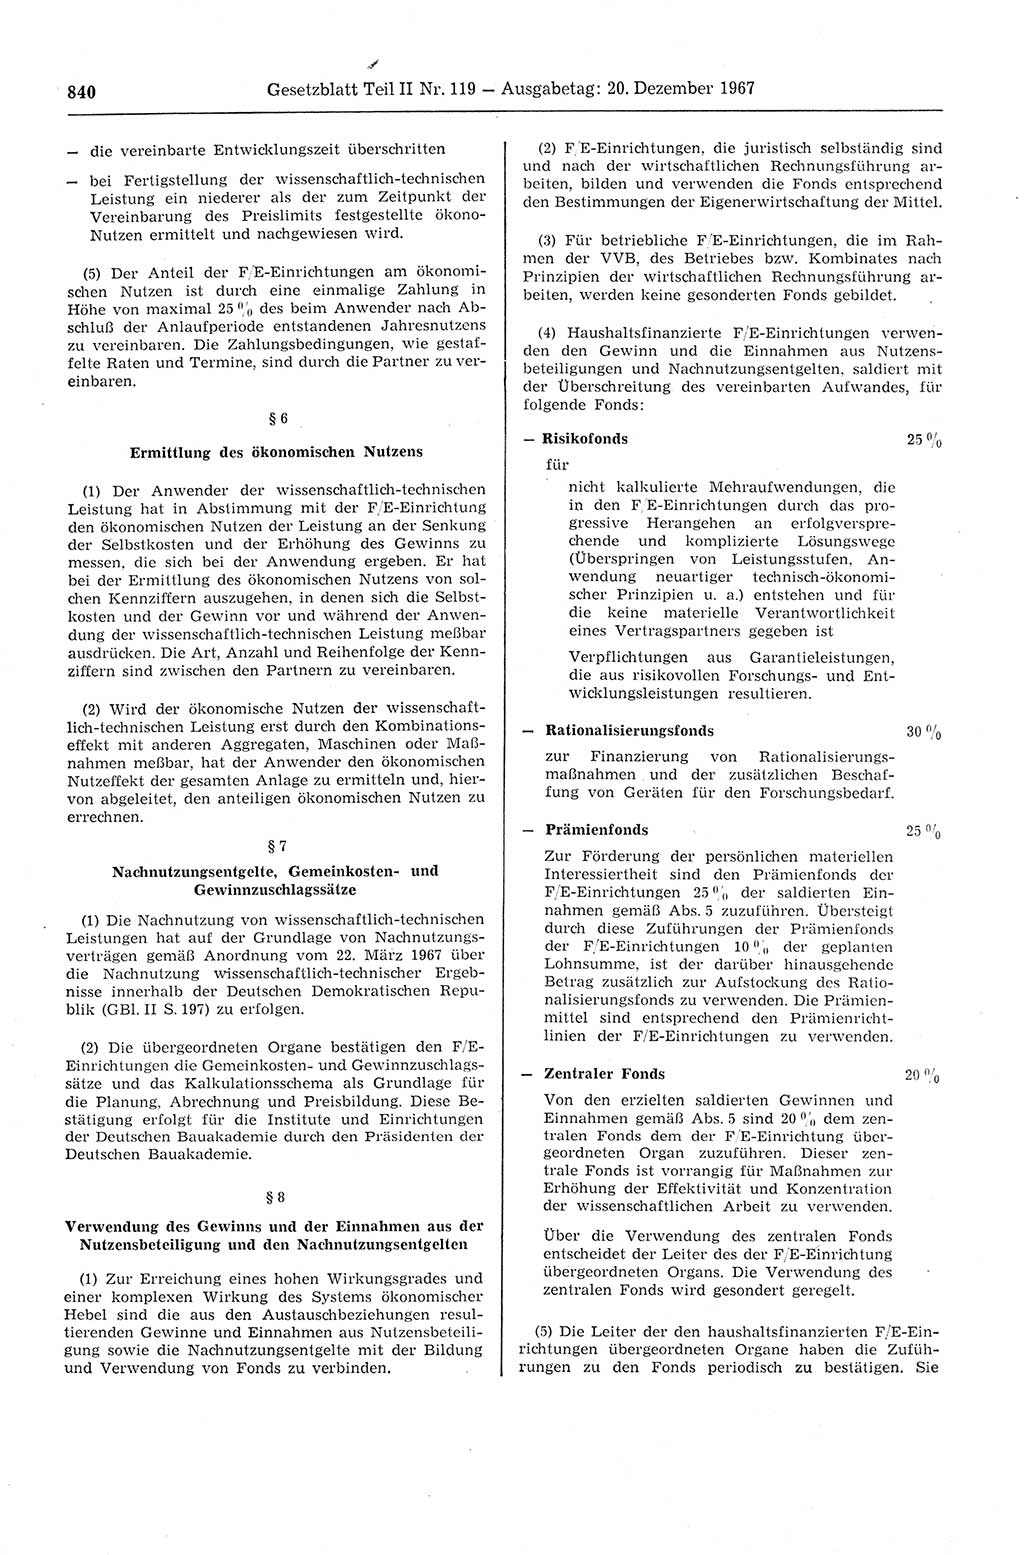 Gesetzblatt (GBl.) der Deutschen Demokratischen Republik (DDR) Teil ⅠⅠ 1967, Seite 840 (GBl. DDR ⅠⅠ 1967, S. 840)